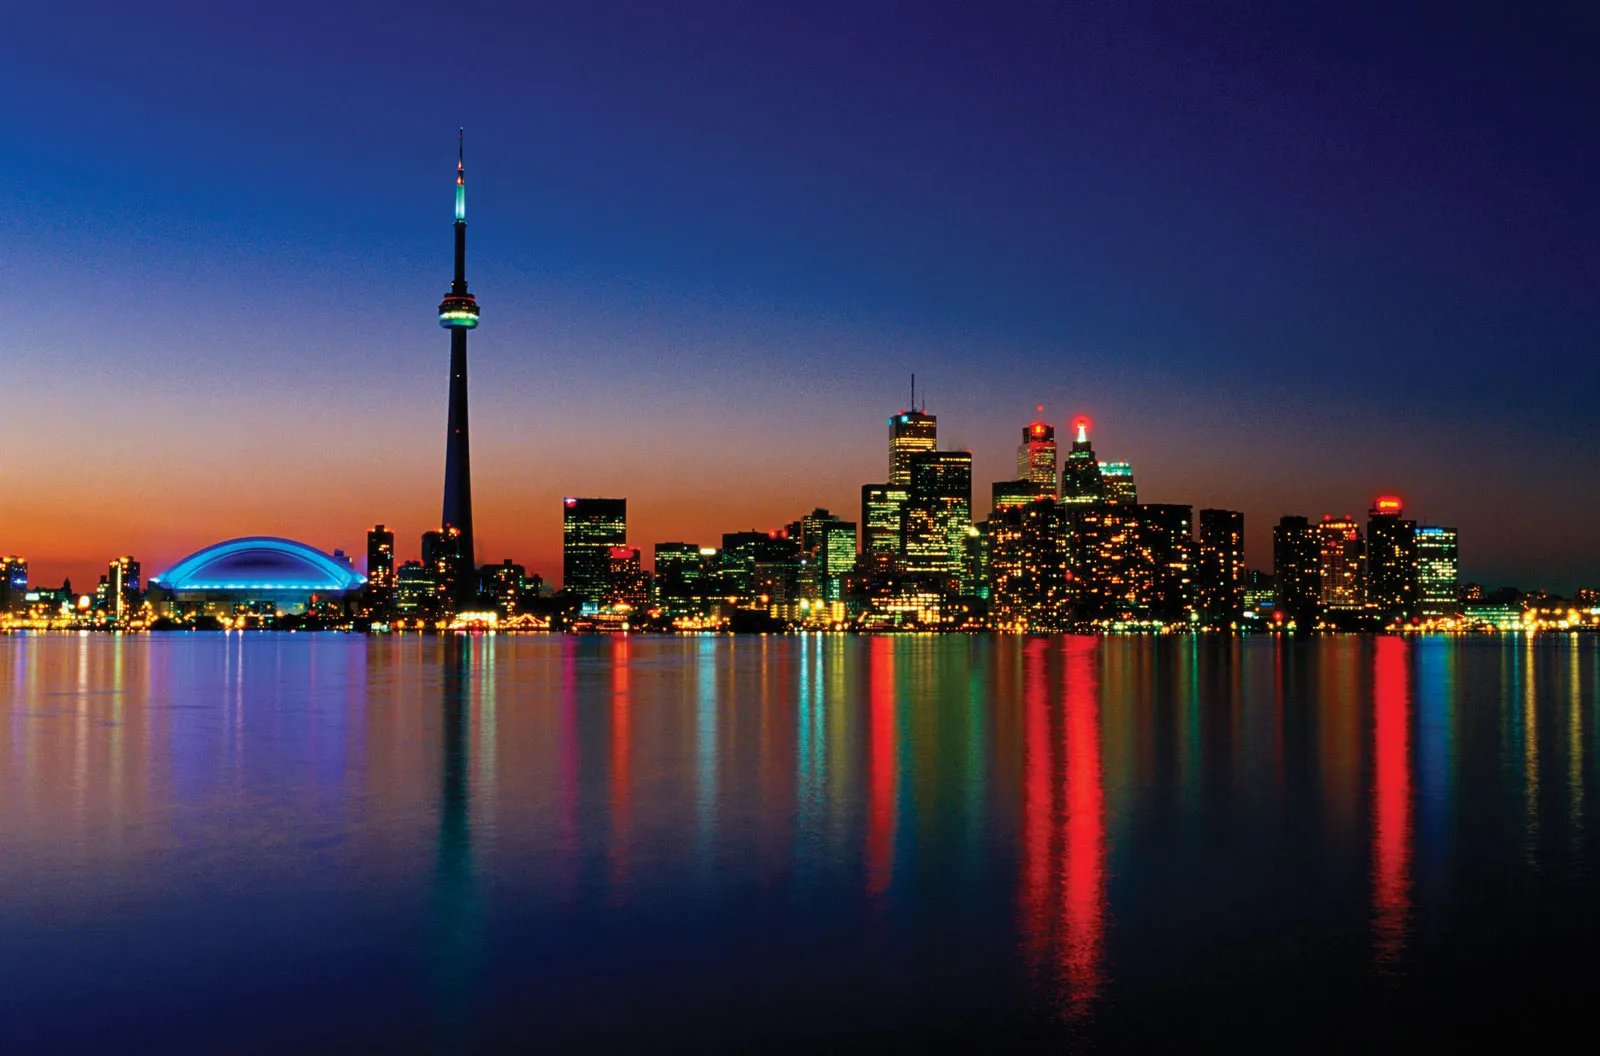 Toronto - Spiritleaf Ottawa: Where to Buy Weed in Canada